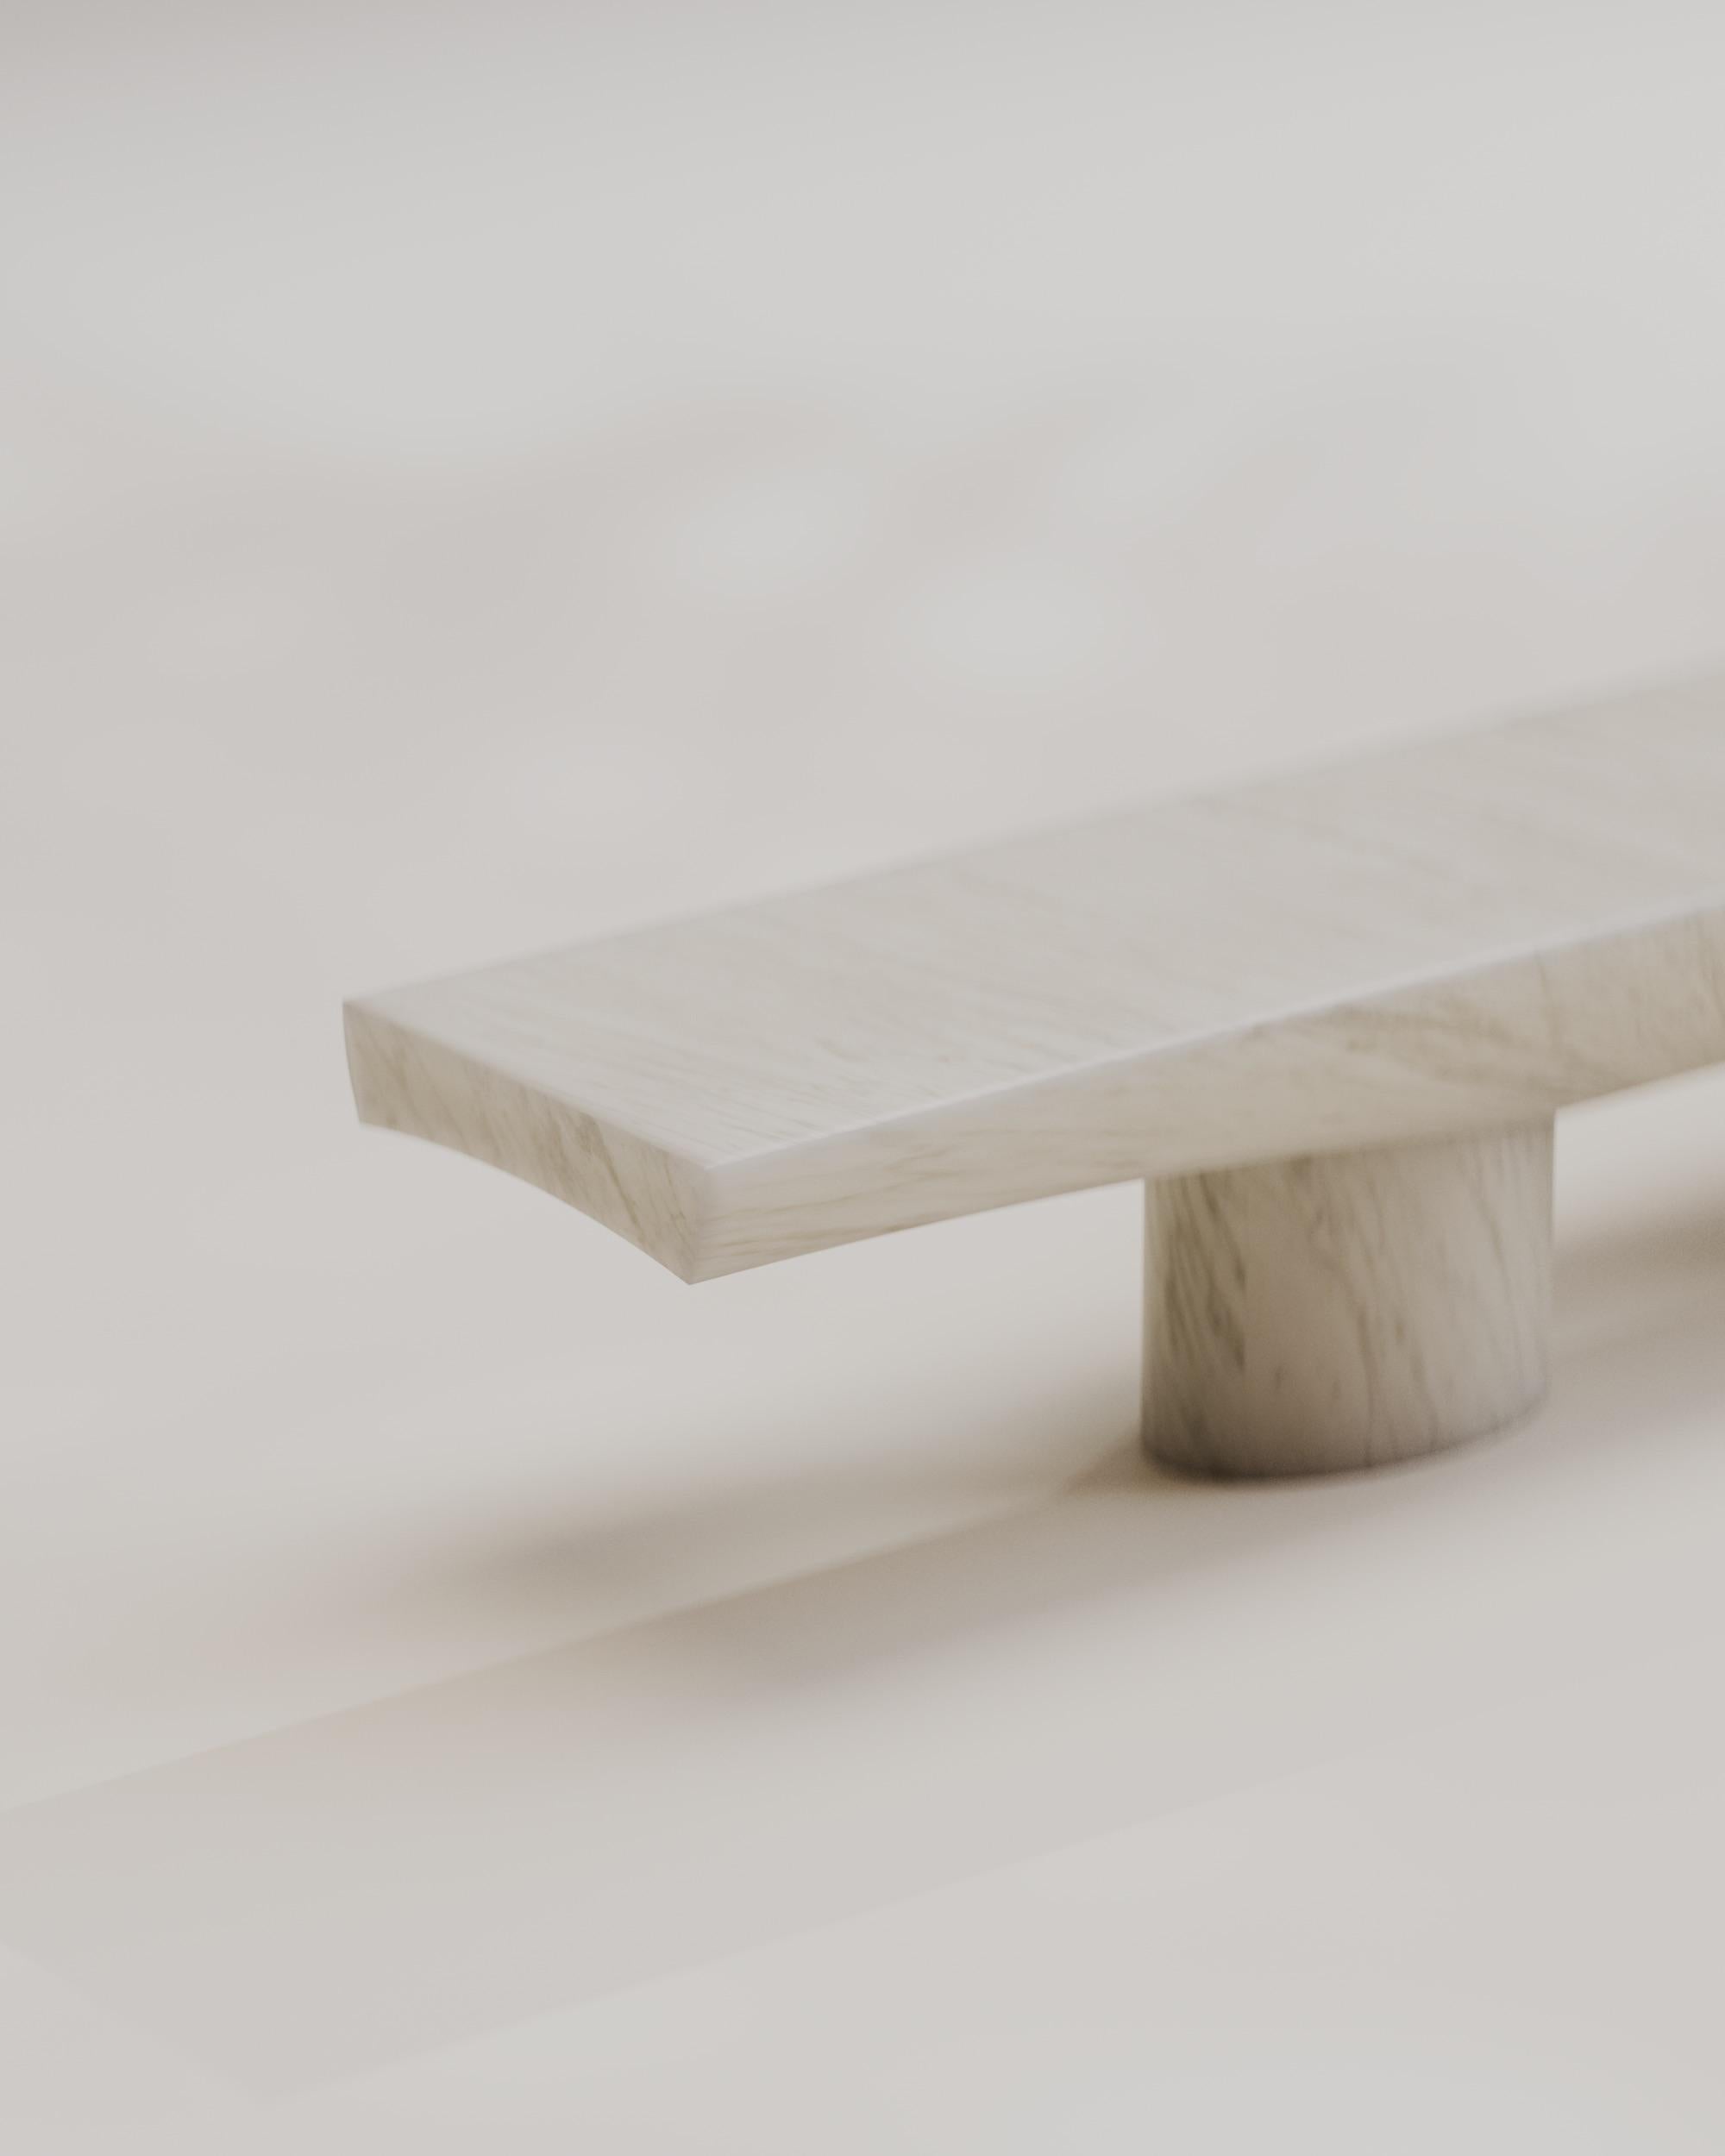 Italian Contemporary Solid White Marble Abraccio Bench 160 by Studio Narra For Sale